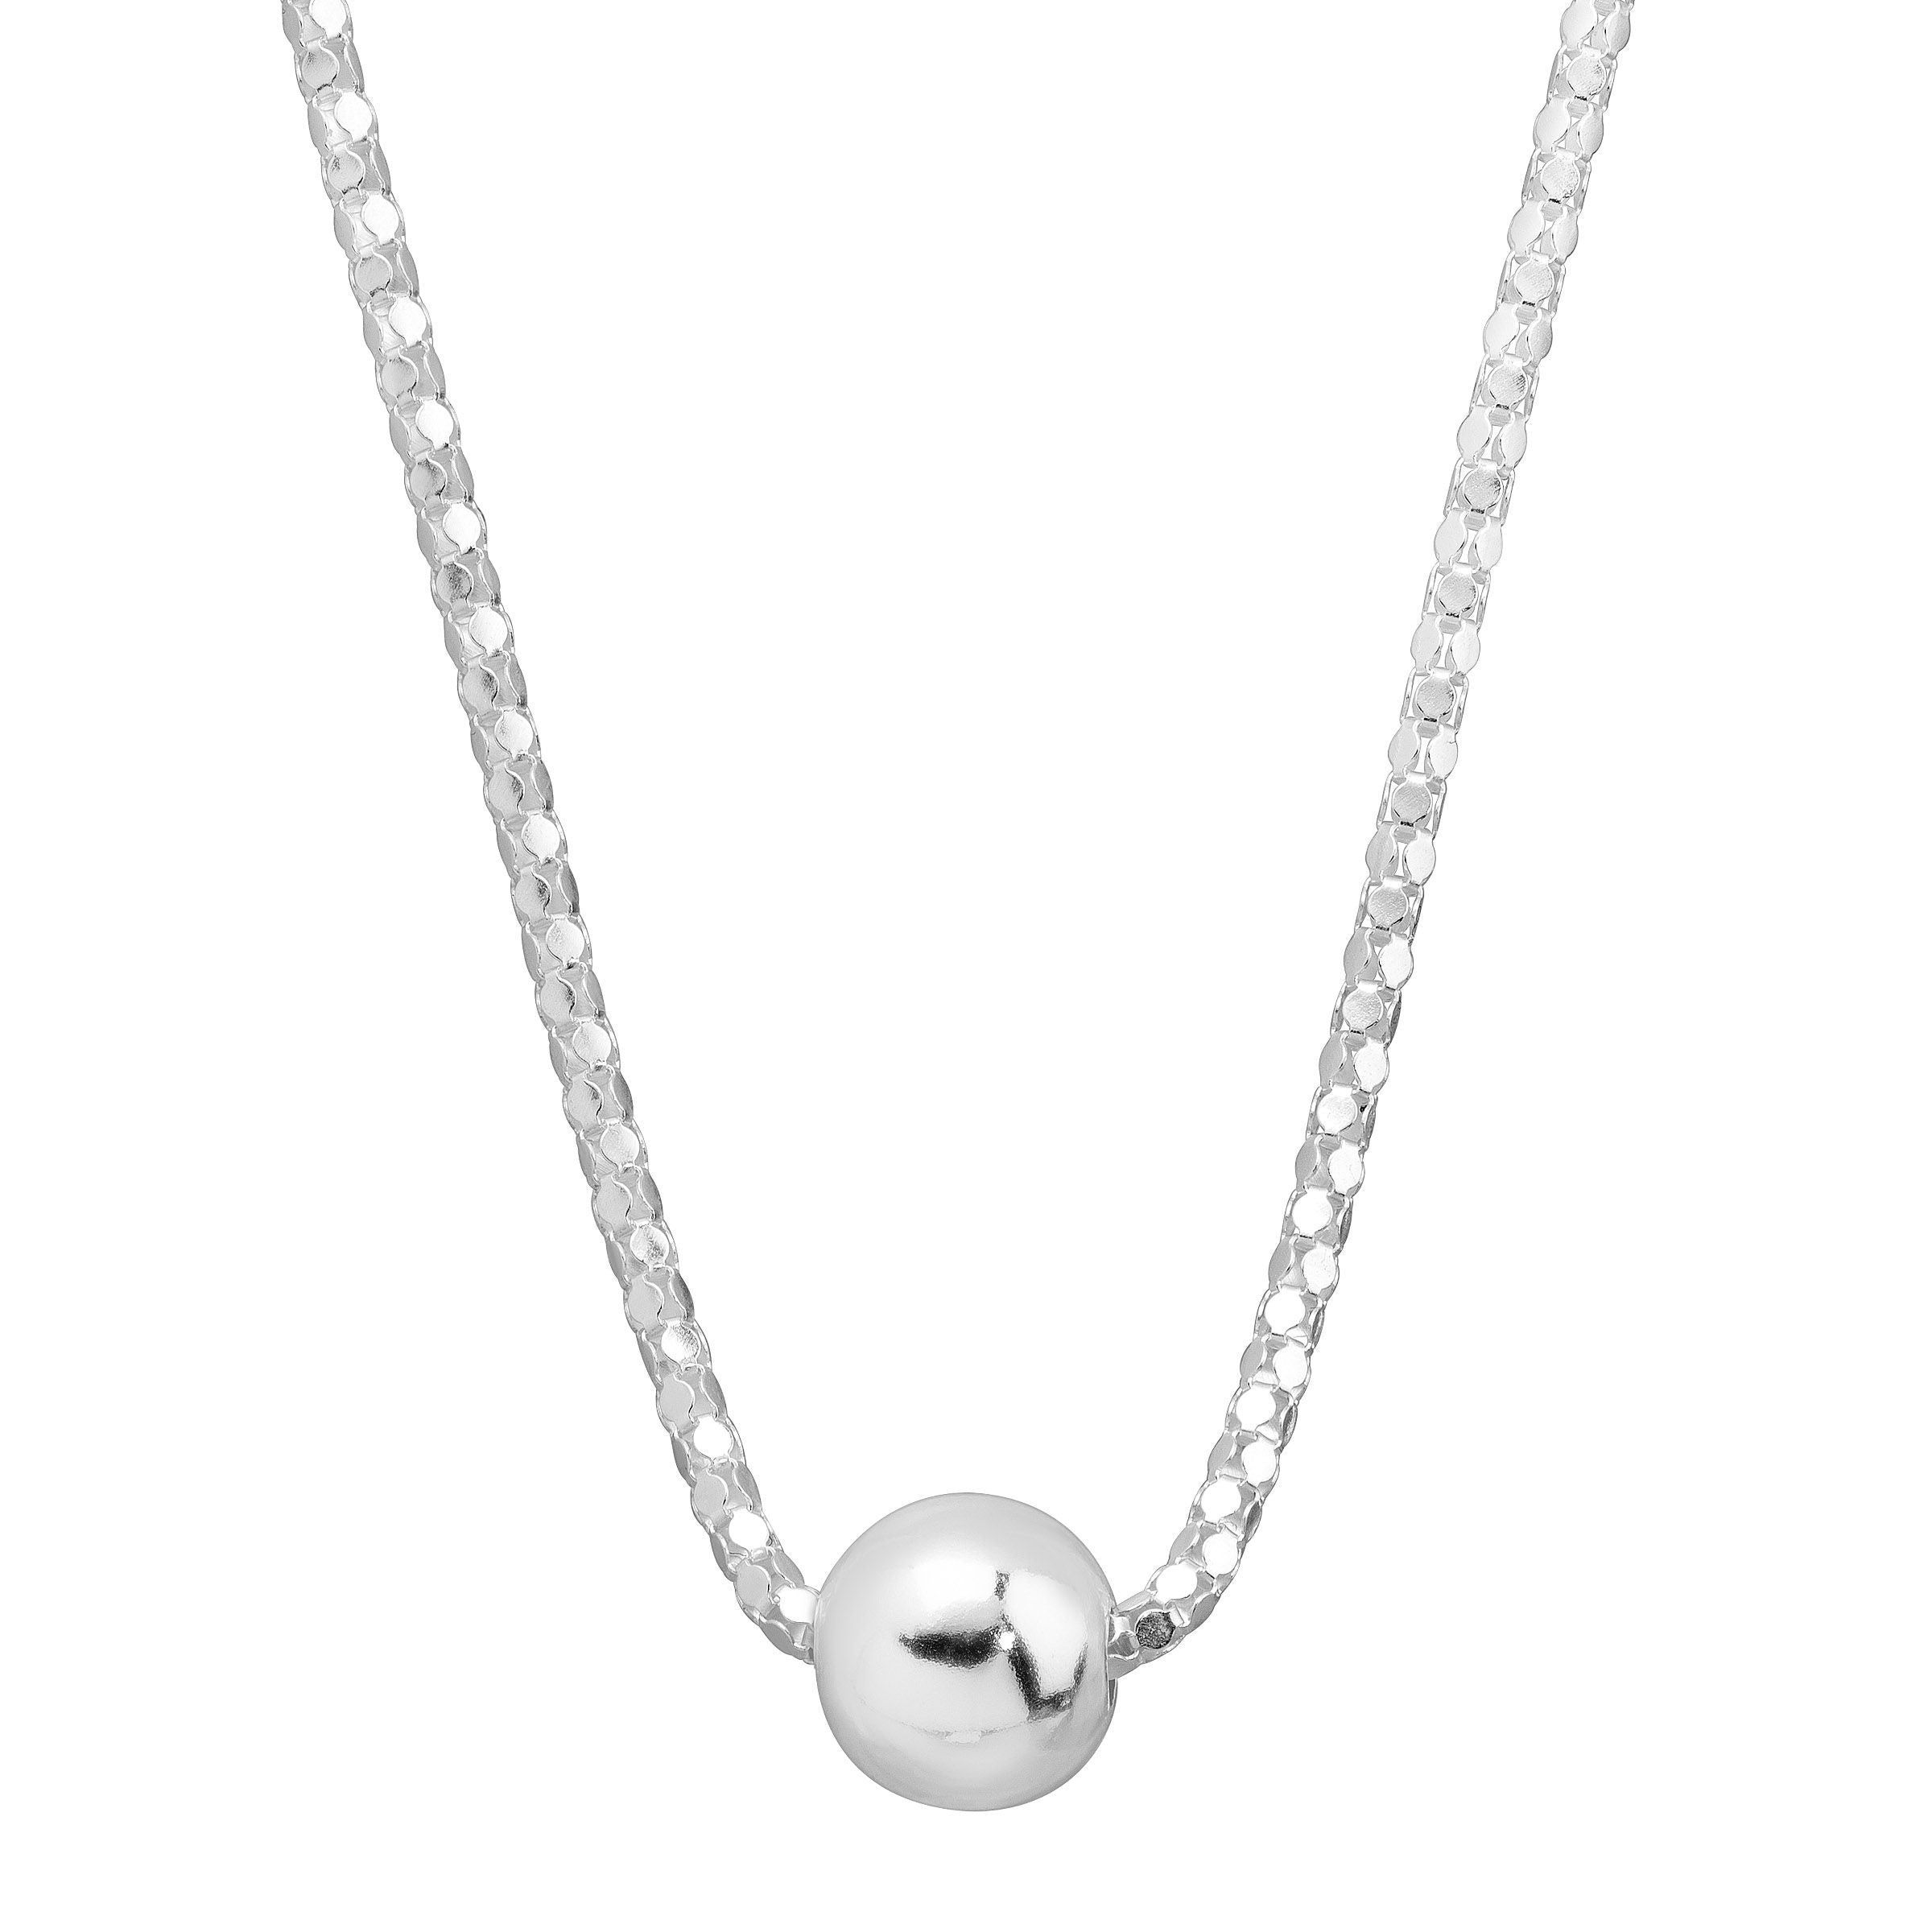 Silpada - Atrani Beaded Station Necklace - Arktana - Jewelry